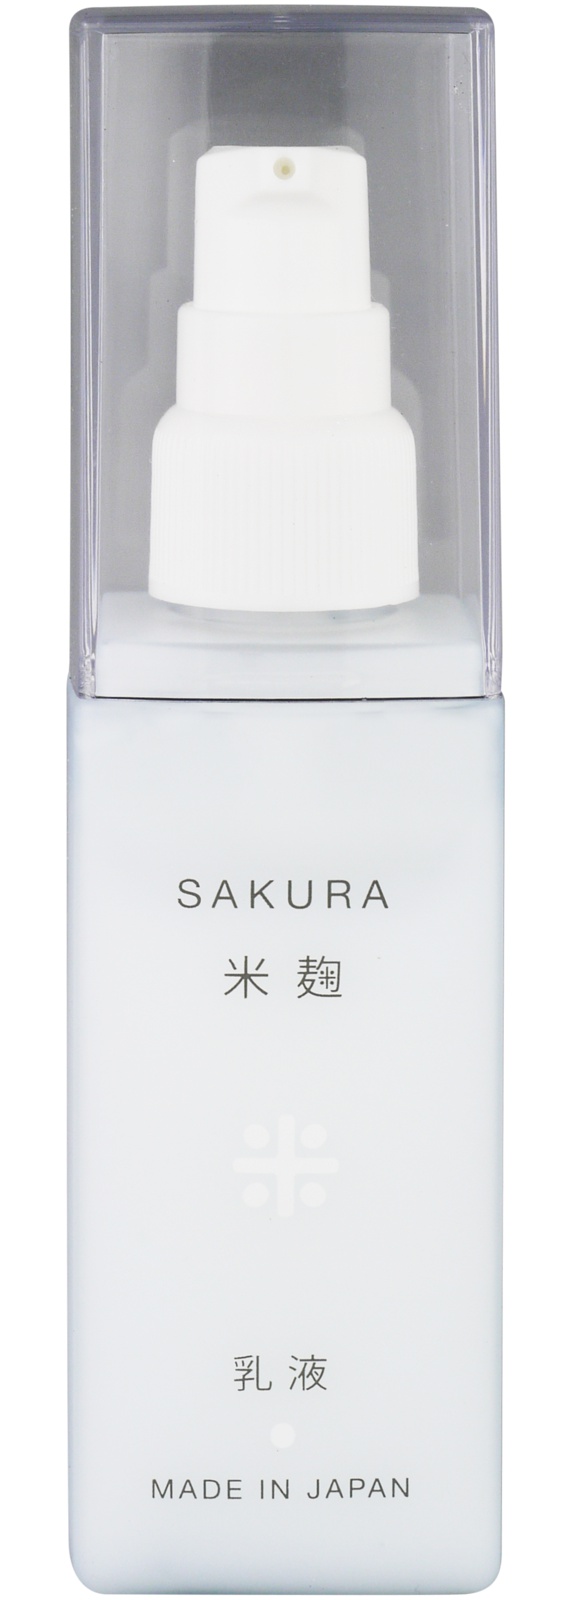 HiroTokyo Sakura Koji Skin Milk